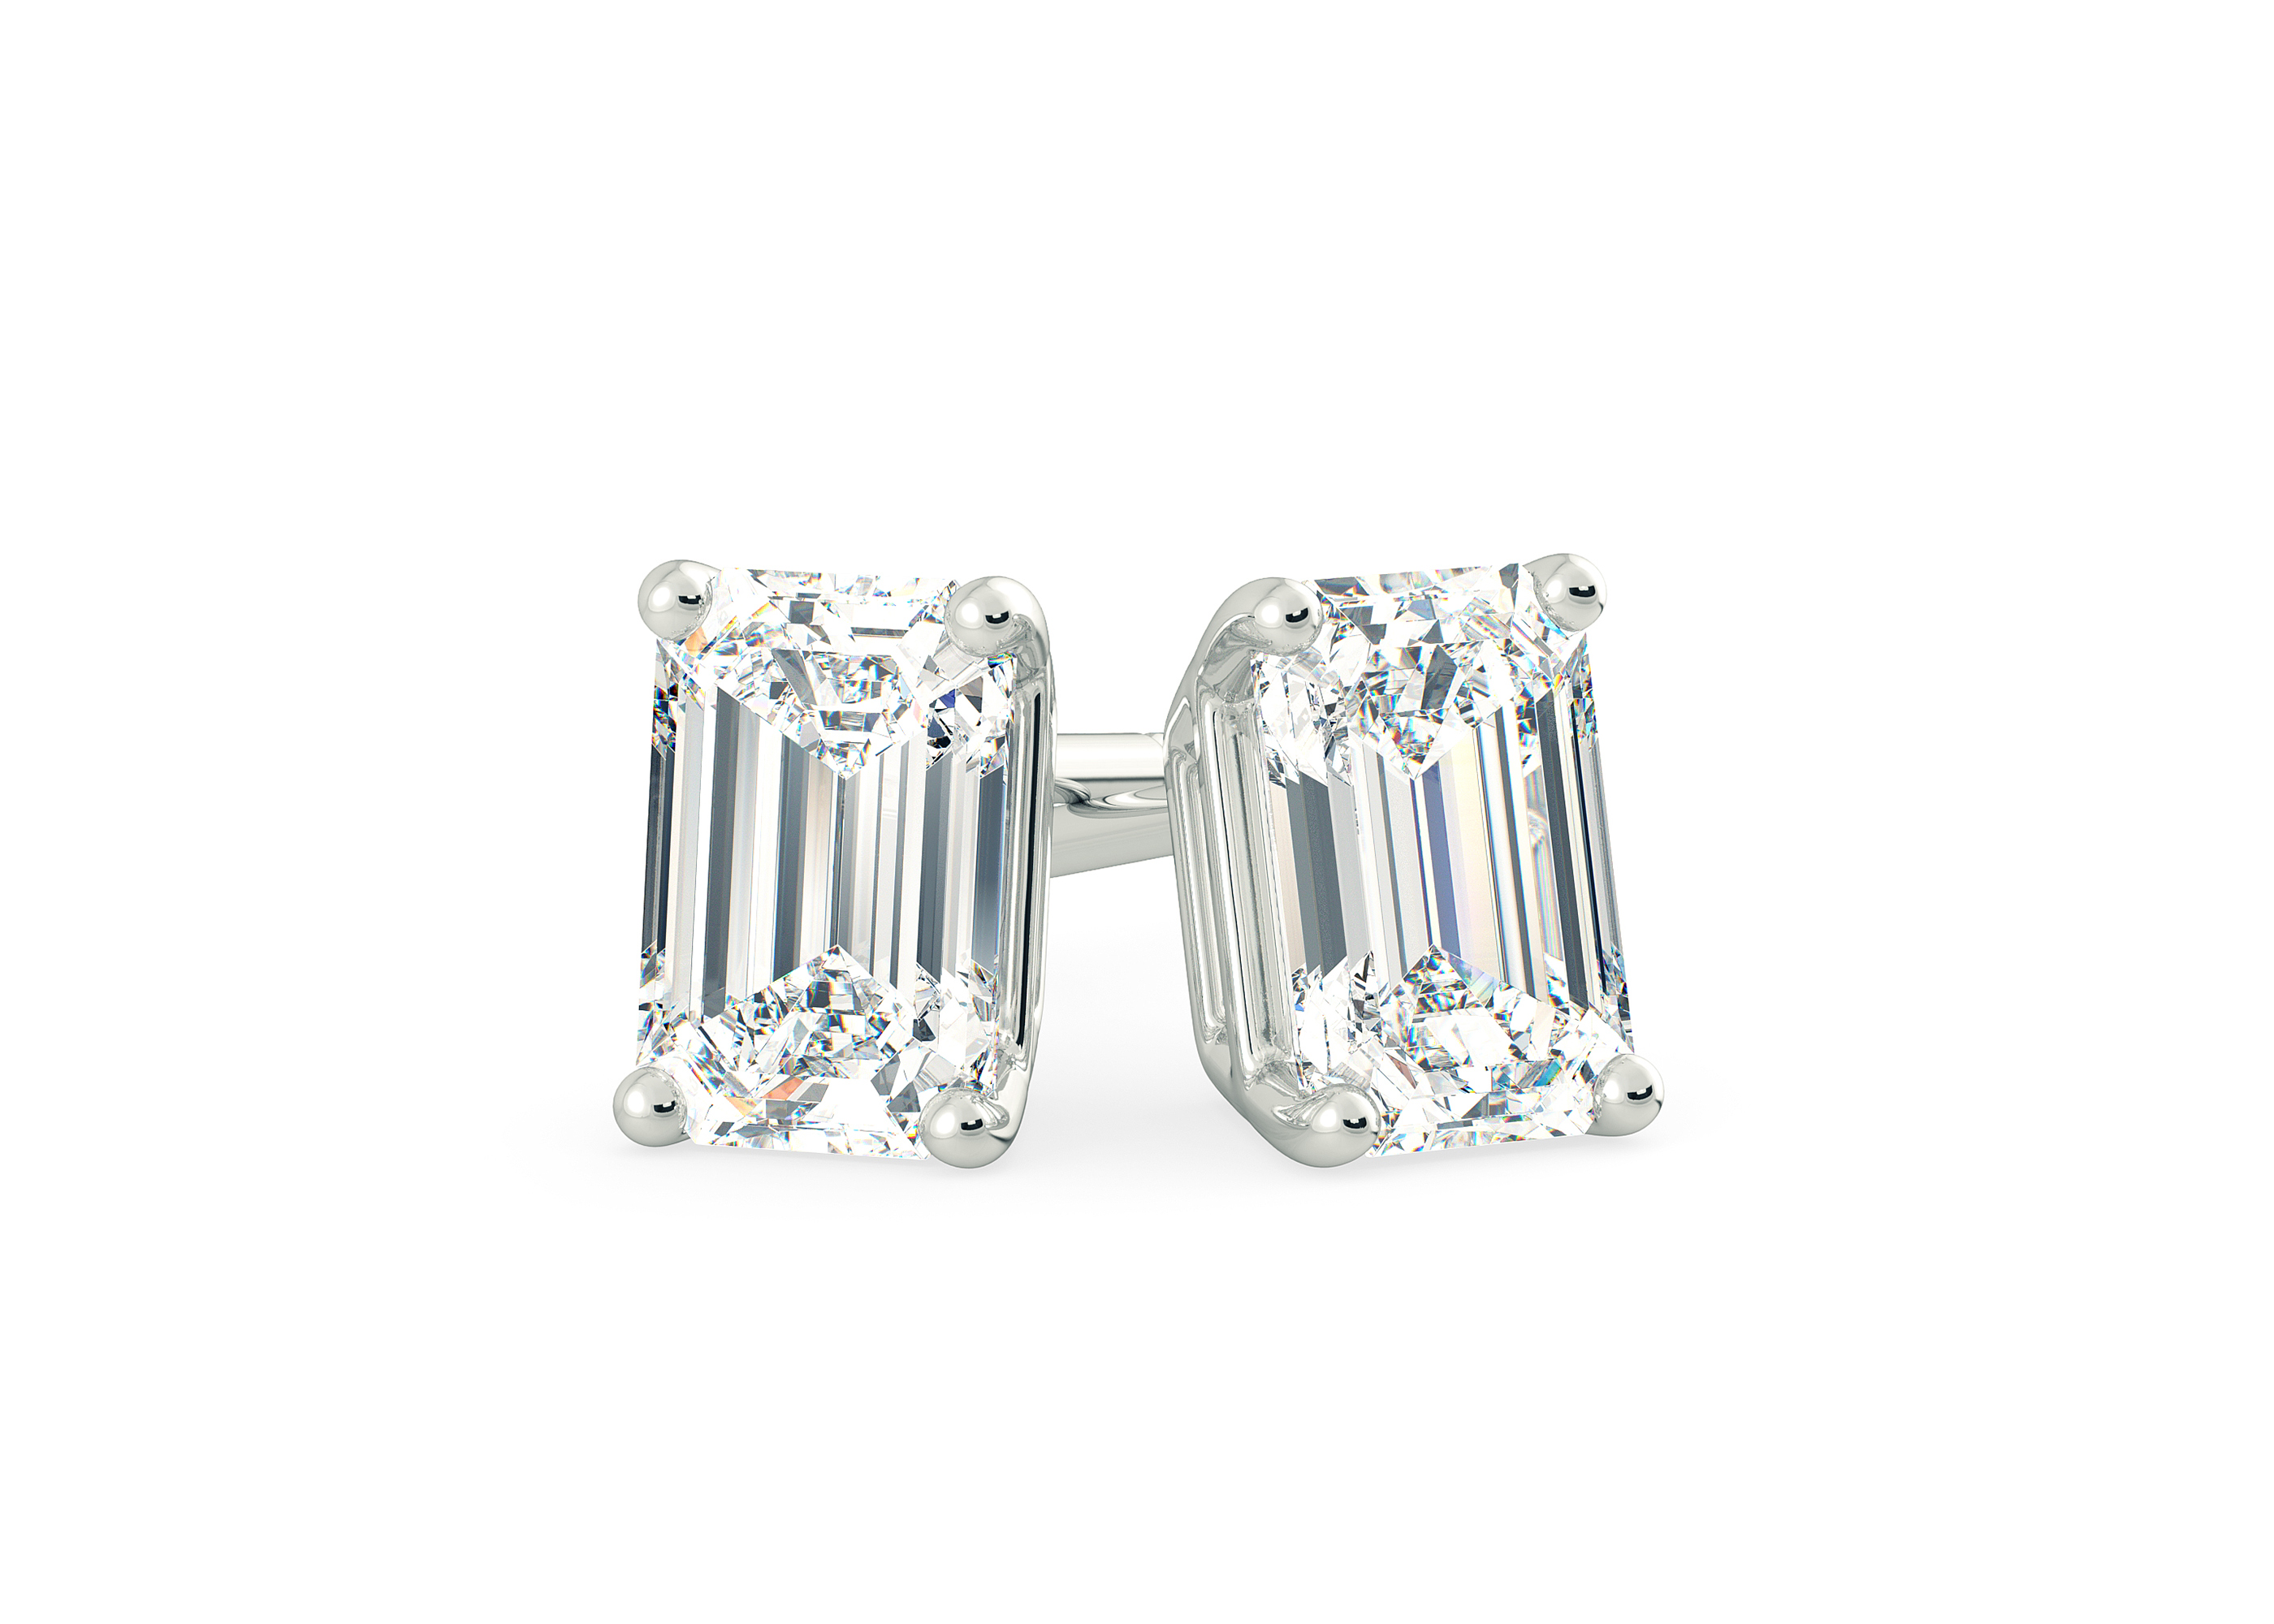 Two Carat Emerald Diamond Stud Earrings in 9K White Gold